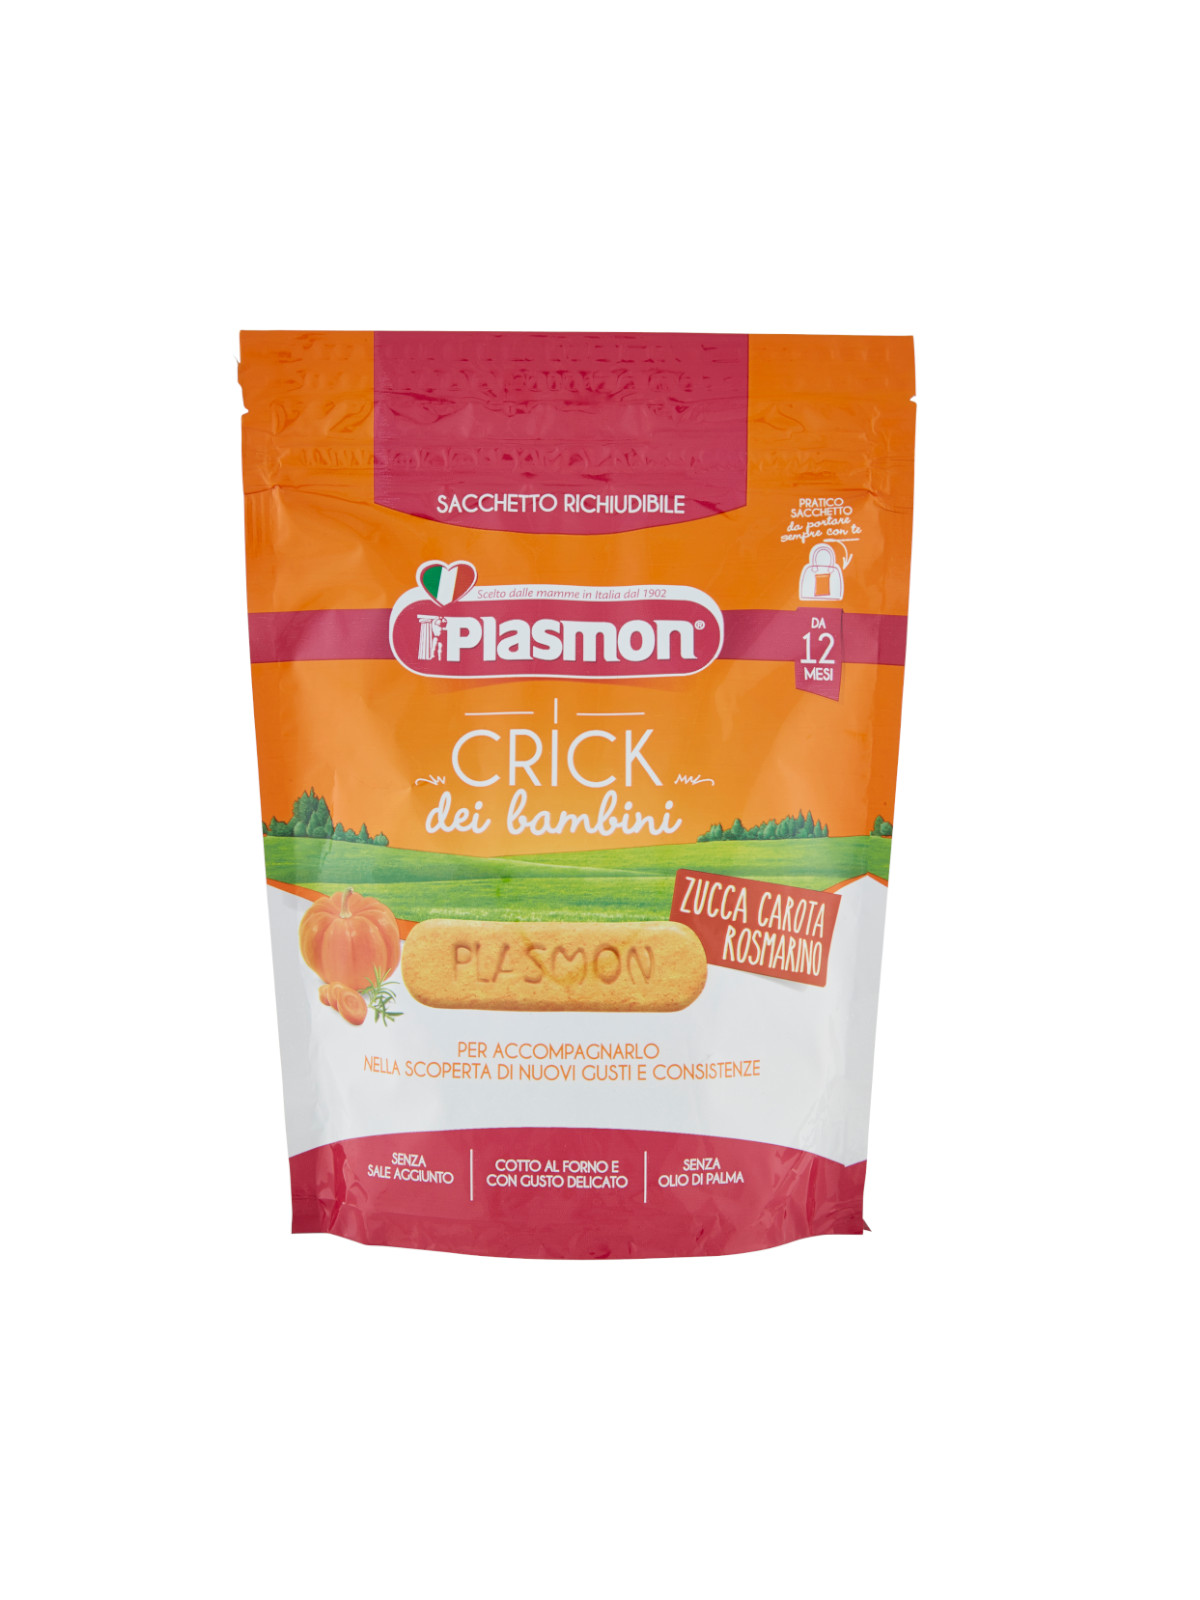 Plasmon - plasmon crick zucca, carota, rosmarino - 100g - PLASMON